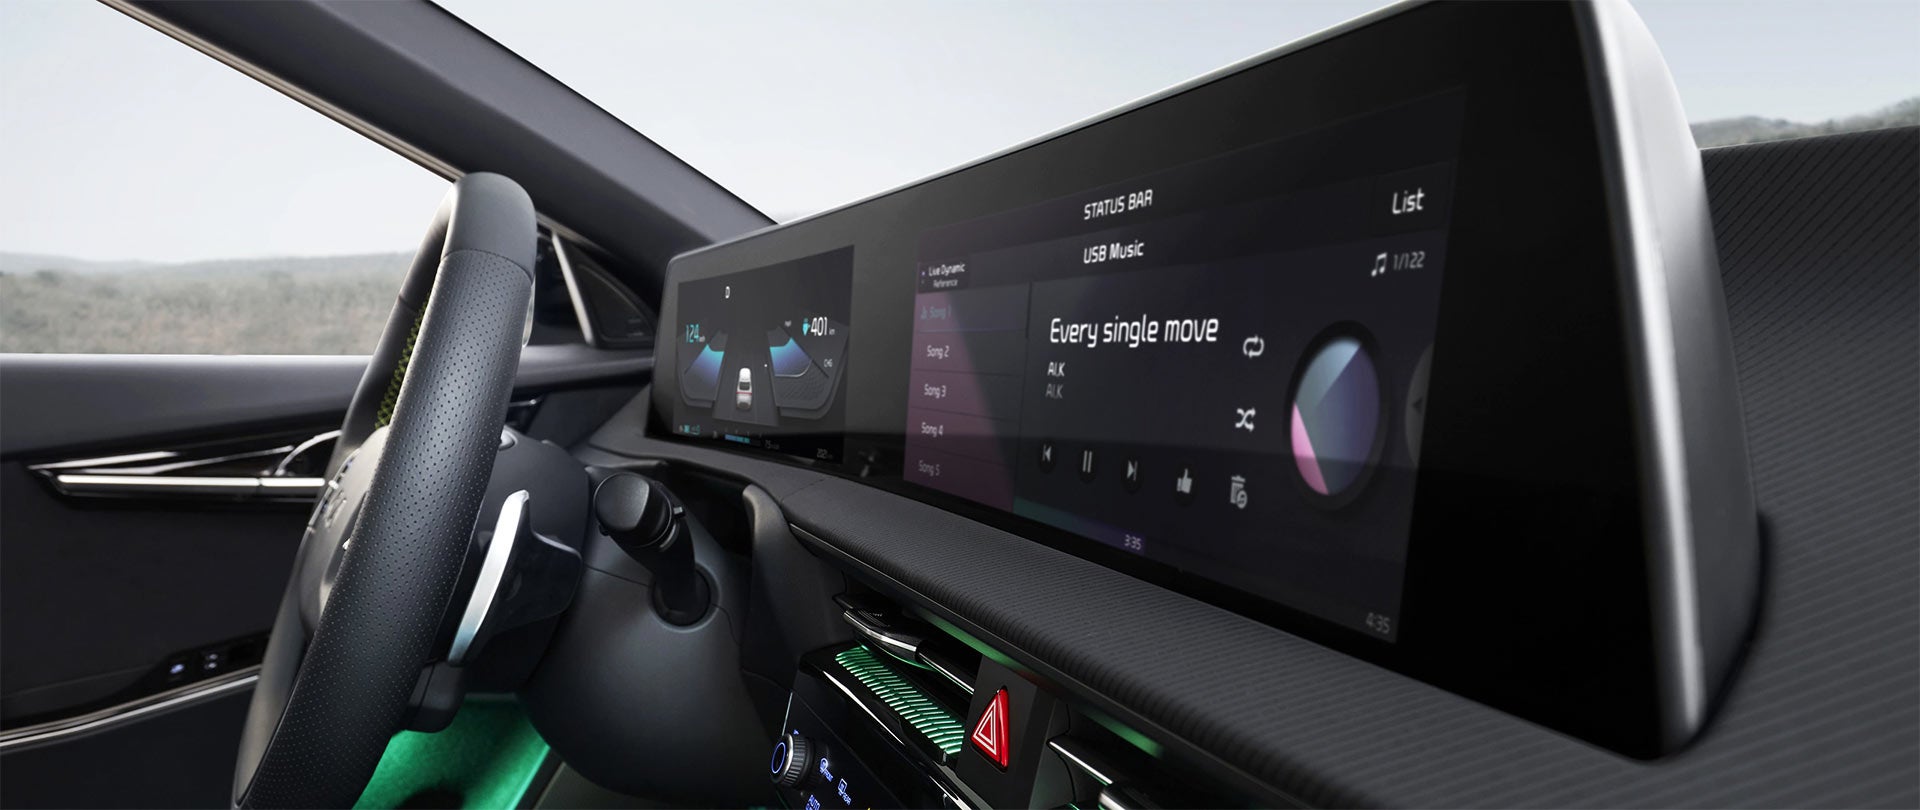 2022 Kia EV6 Dual Curved Screens | Planet Kia Charlotte in Charlotte NC